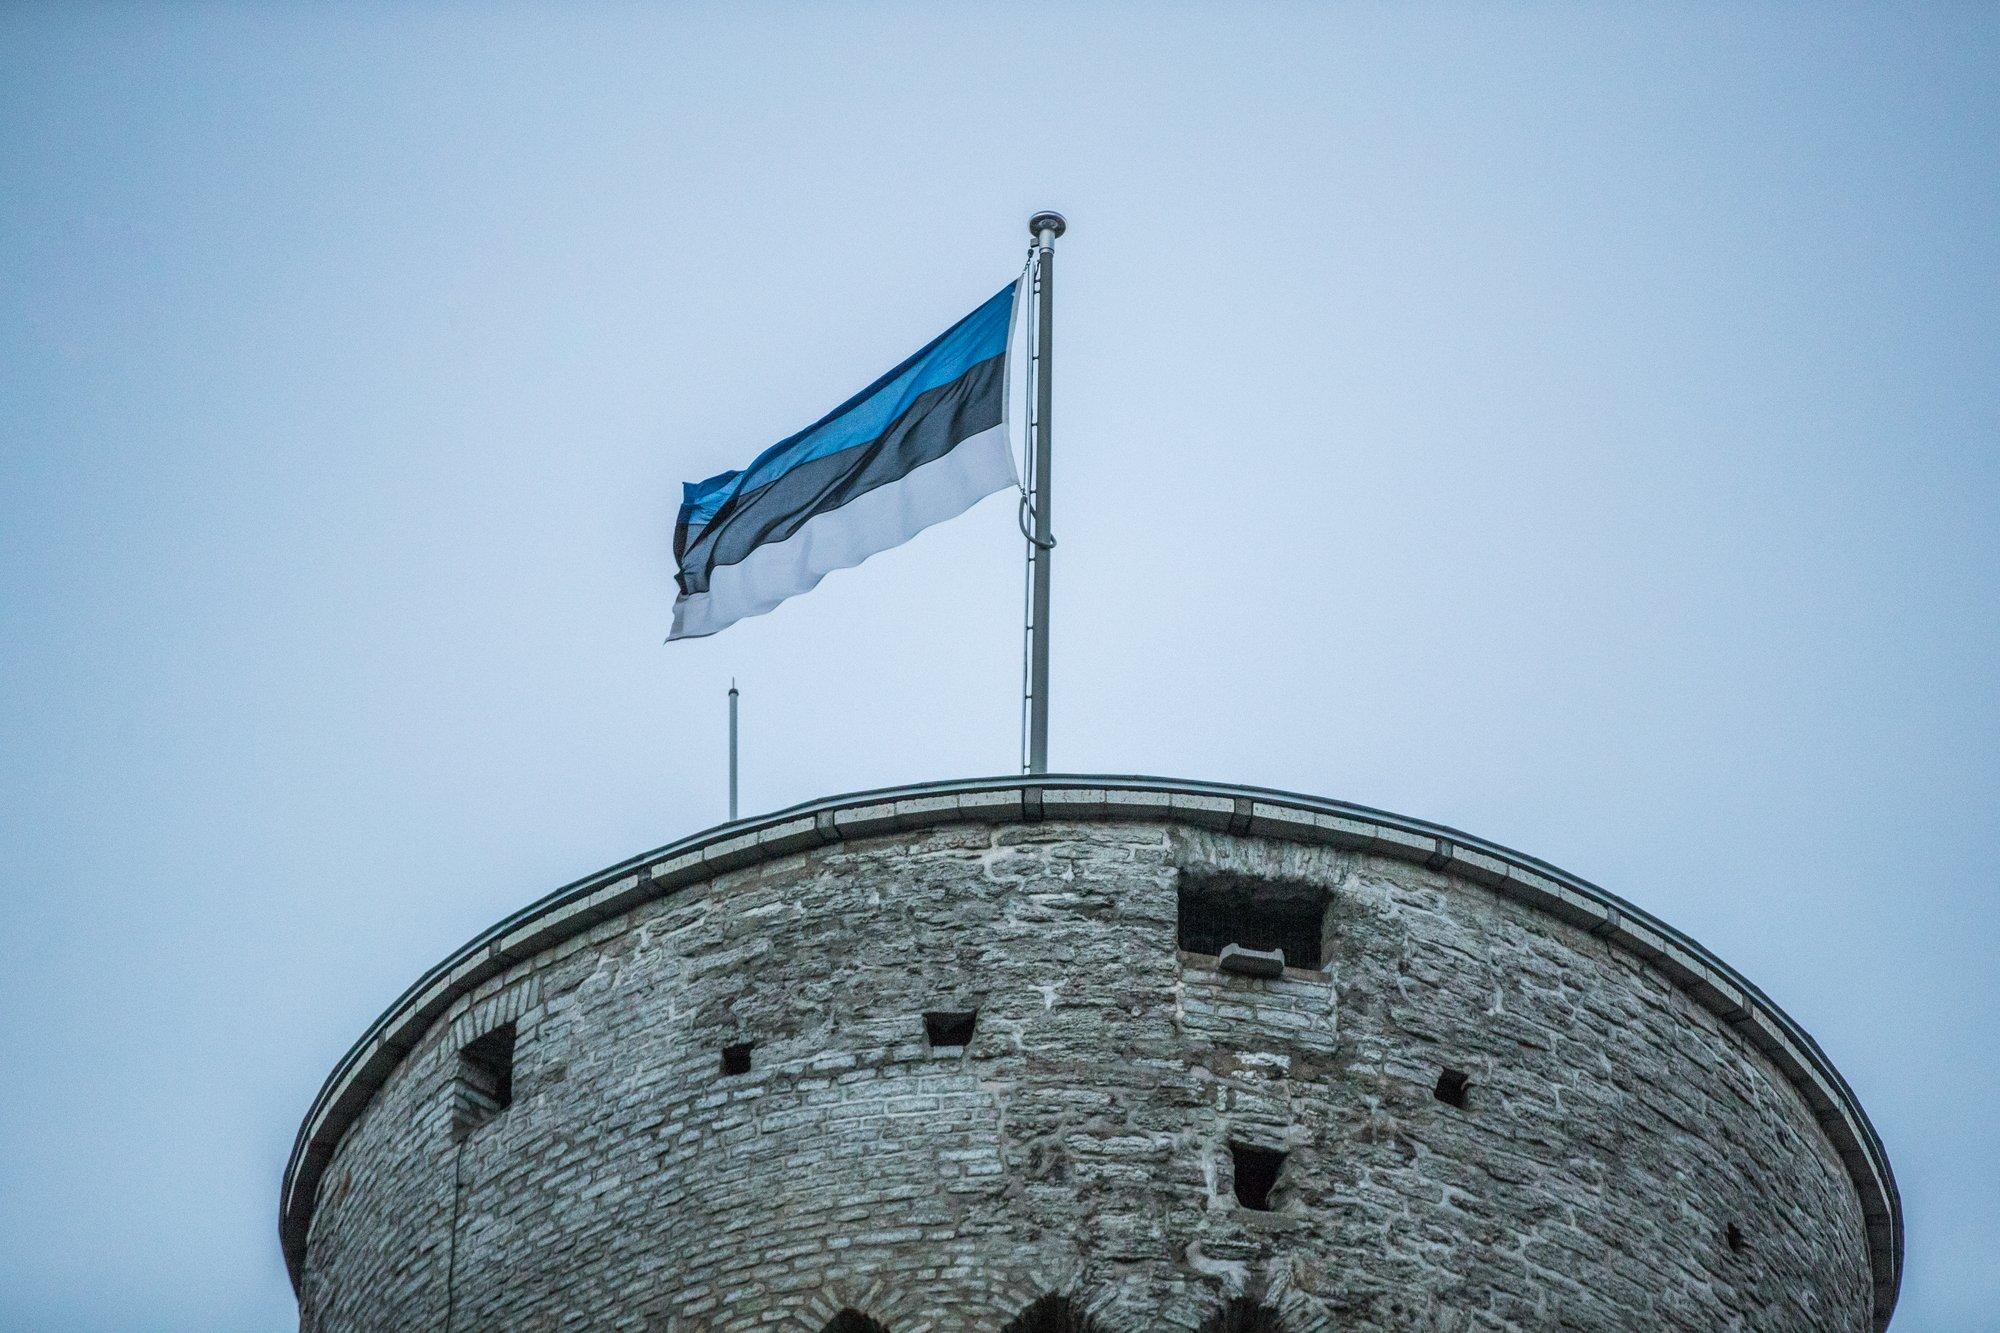 ИНТЕРАКТИВНАЯ ИГРА | Насколько хорошо вы знаете историю движения сопротивления в Эстонии?